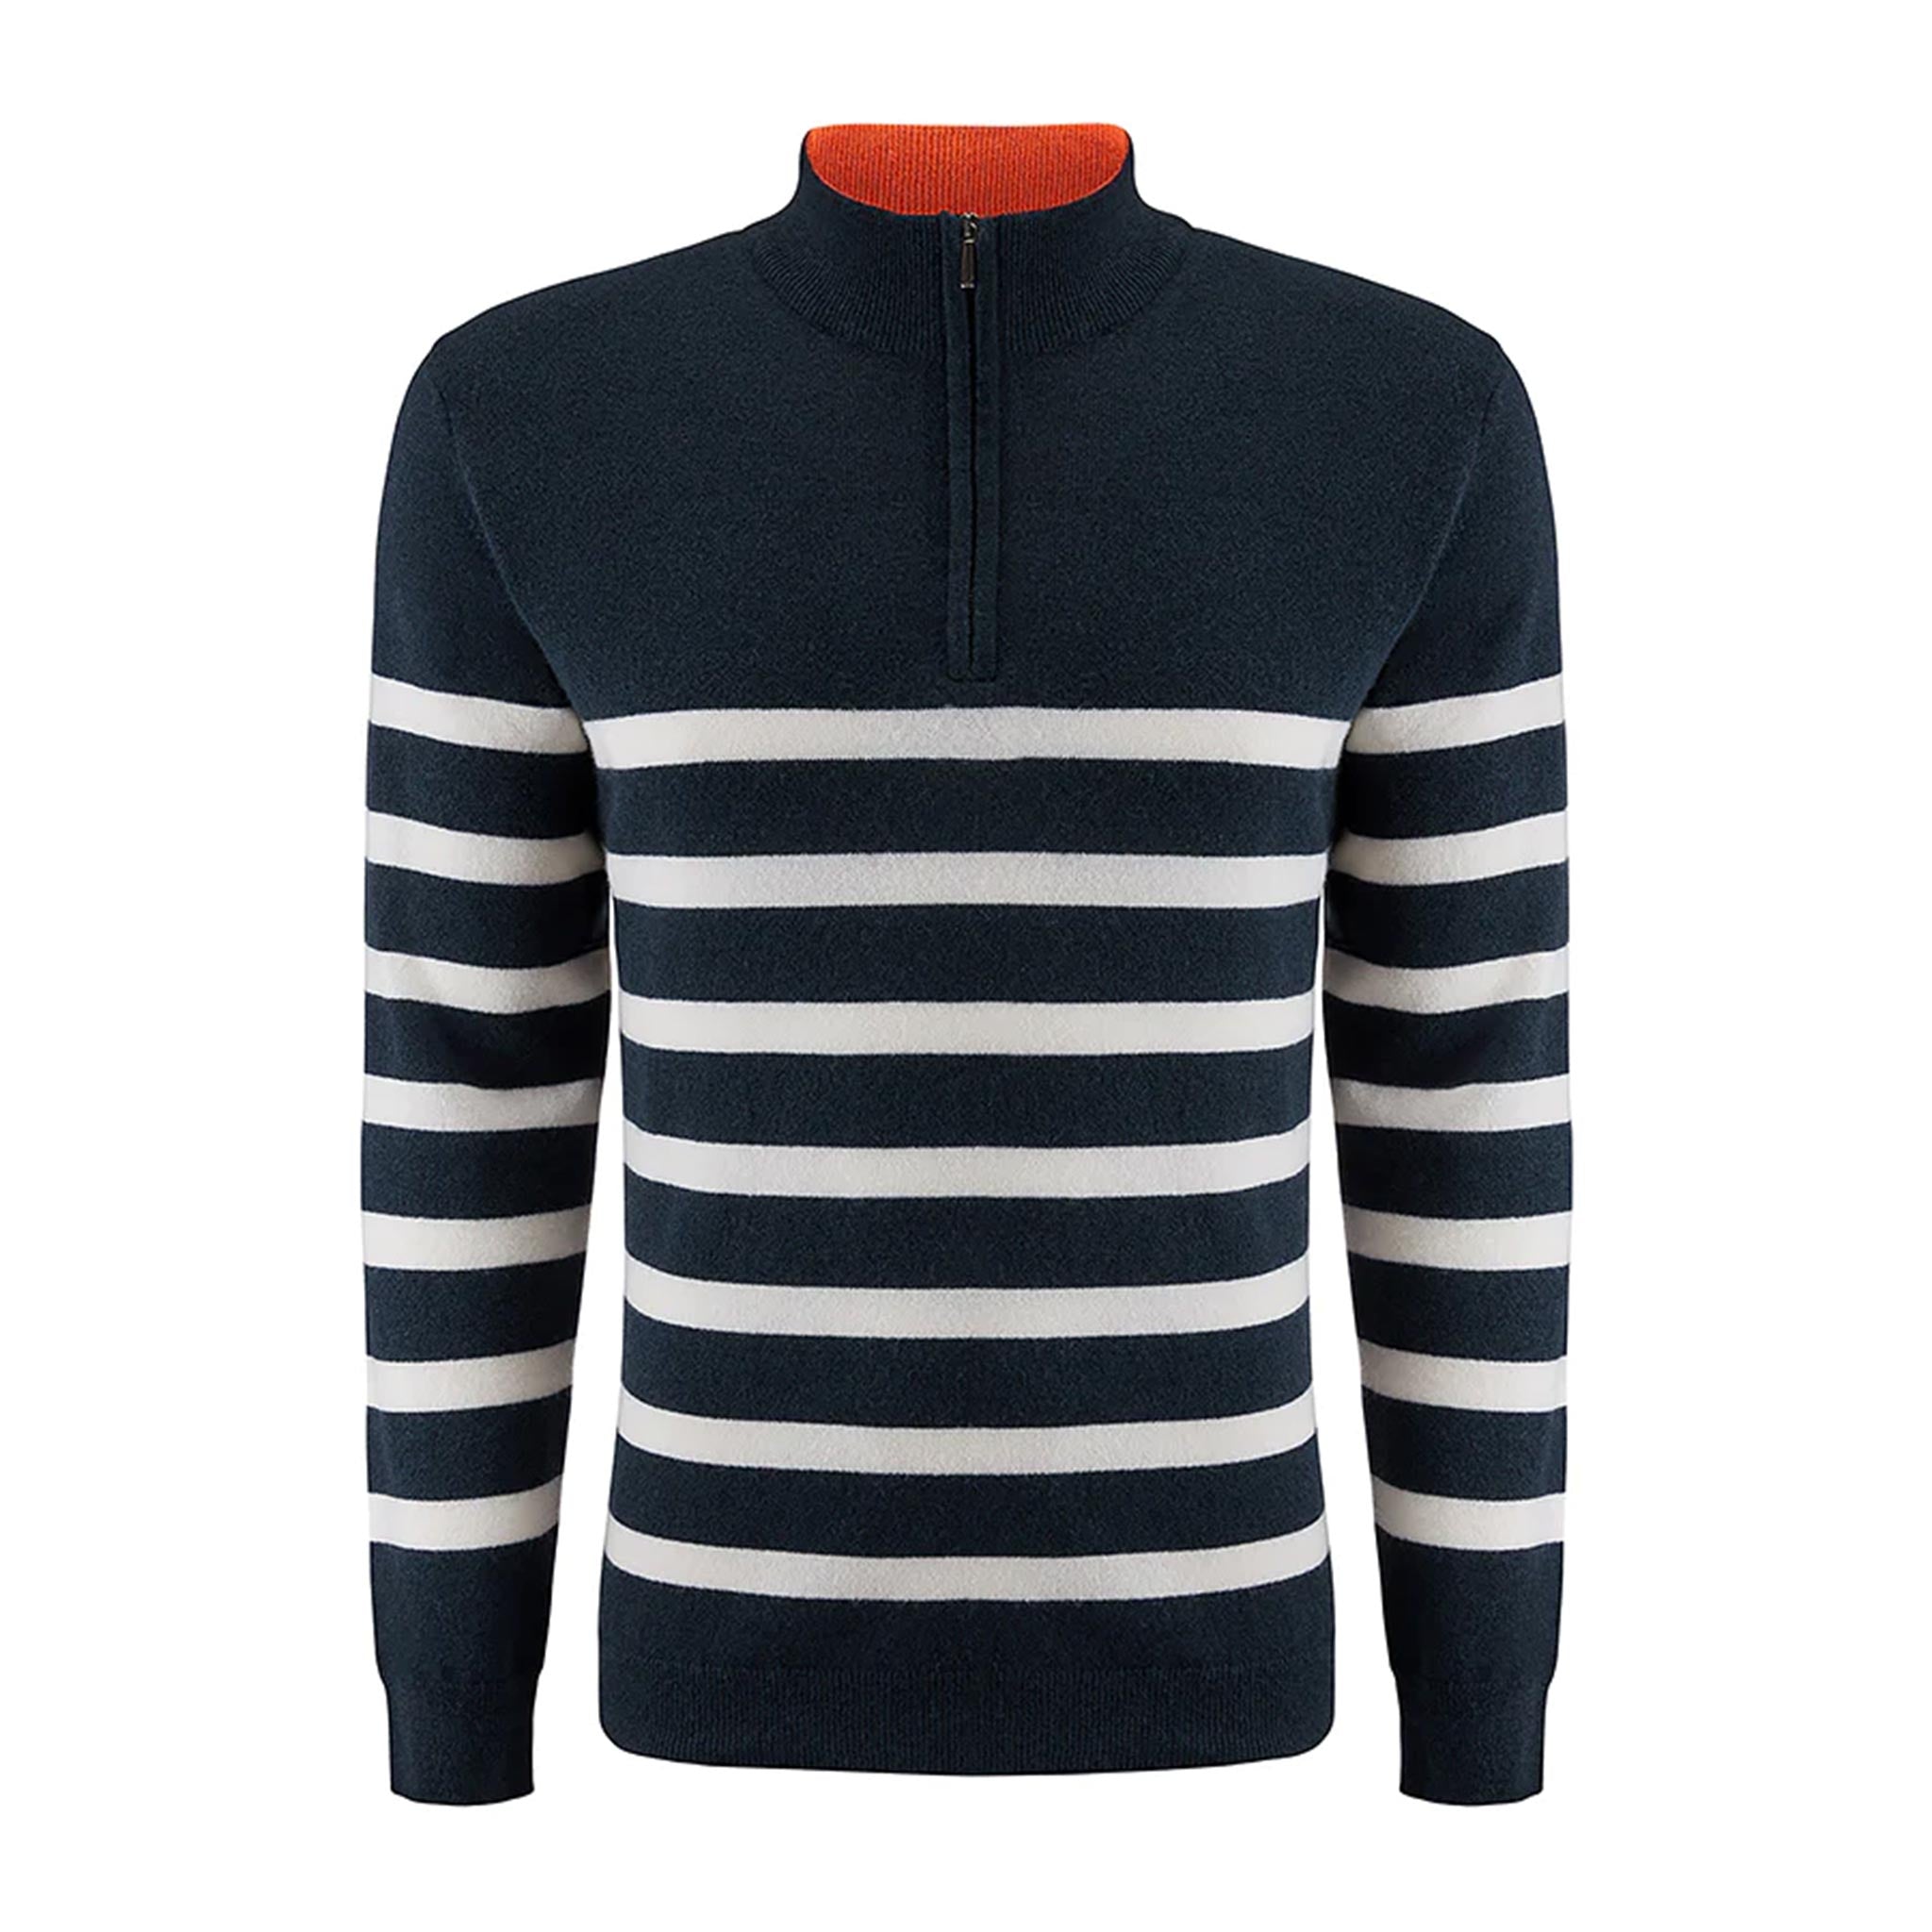 Gullholmen Zip-Up Sweater in Navy/ White Stripes